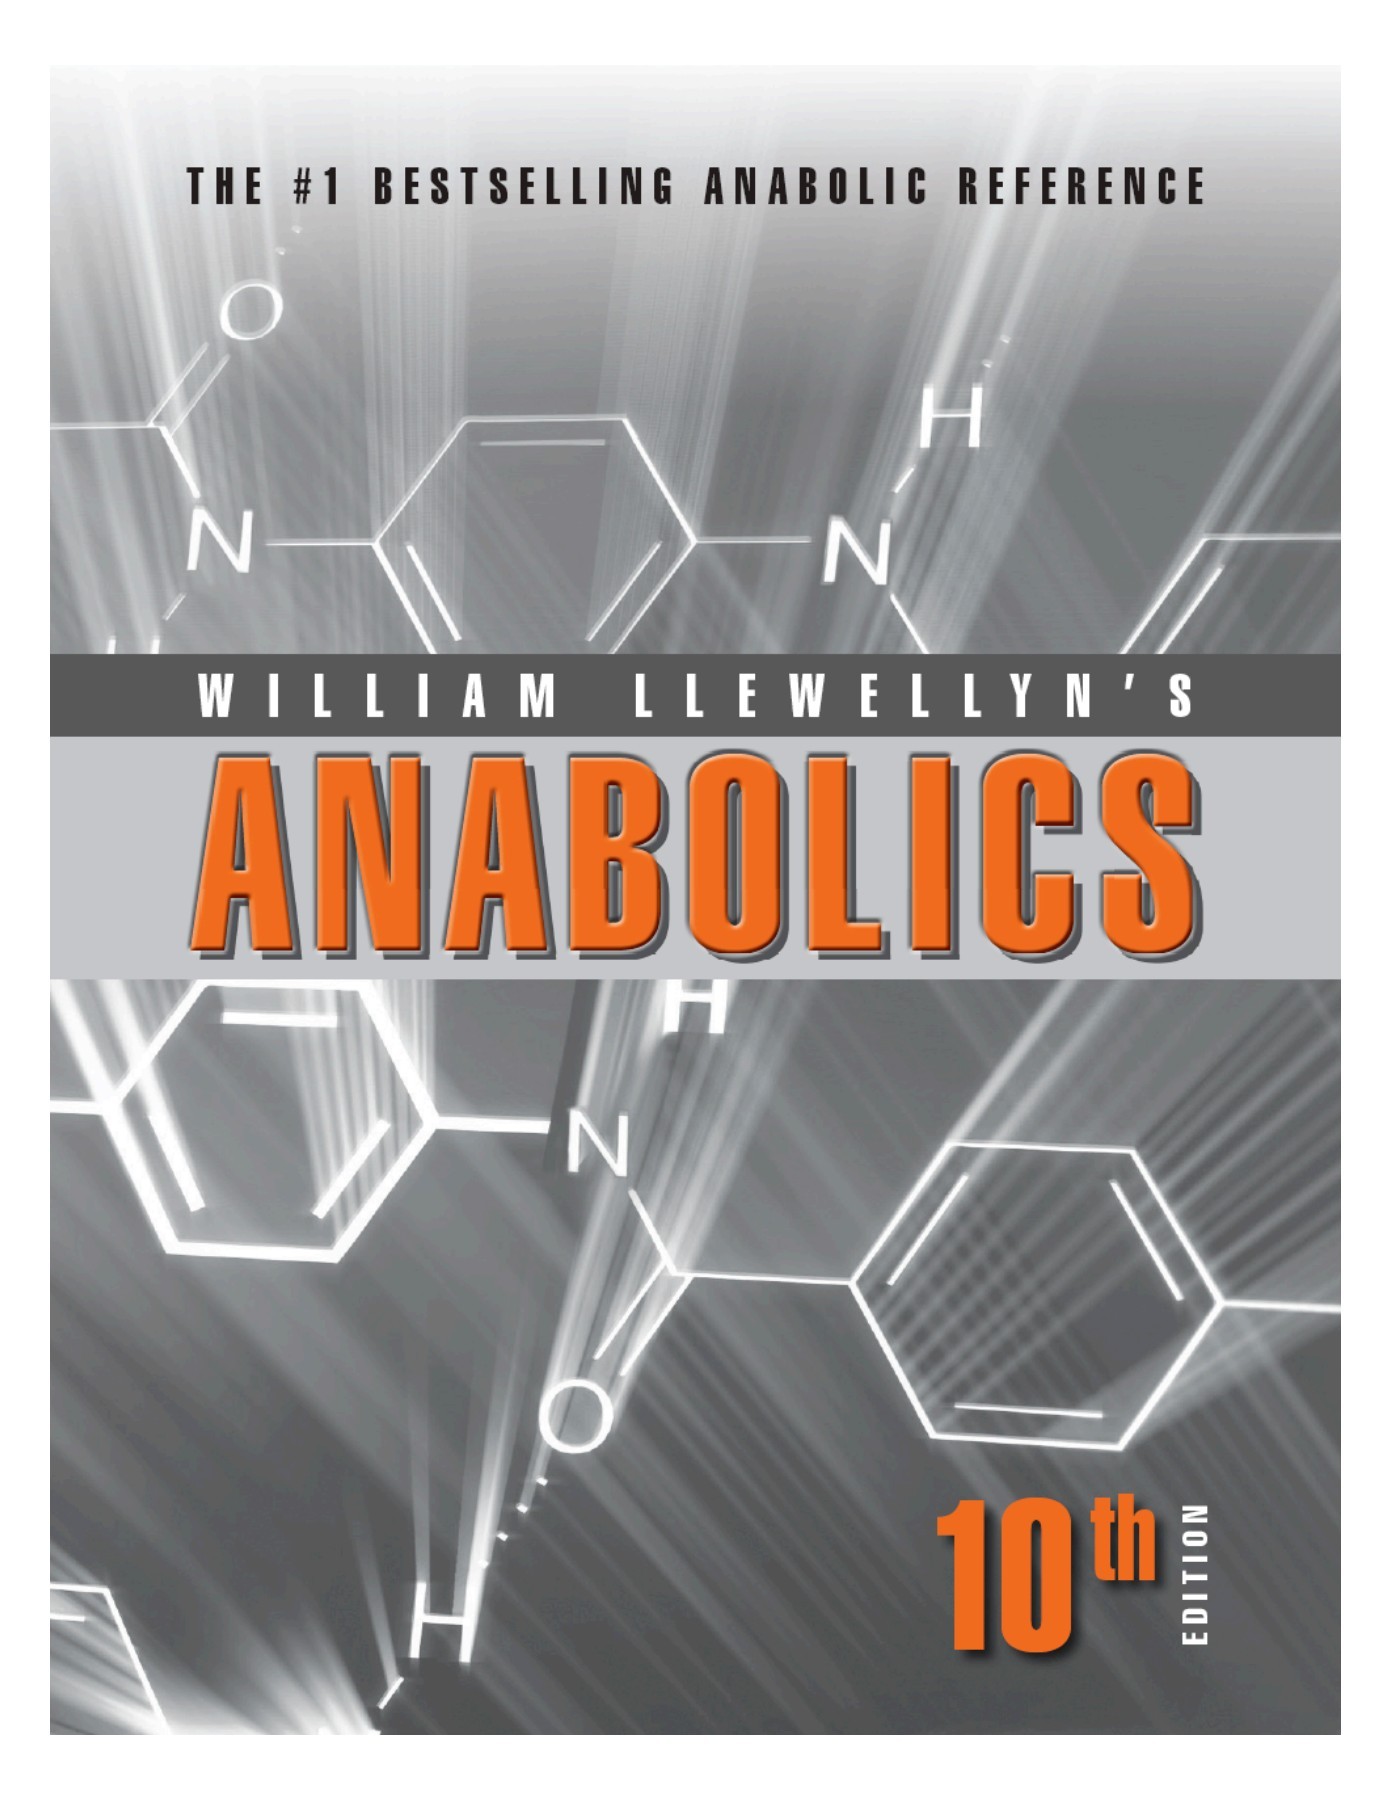 anabolics 2009 by william llewellyn pdf